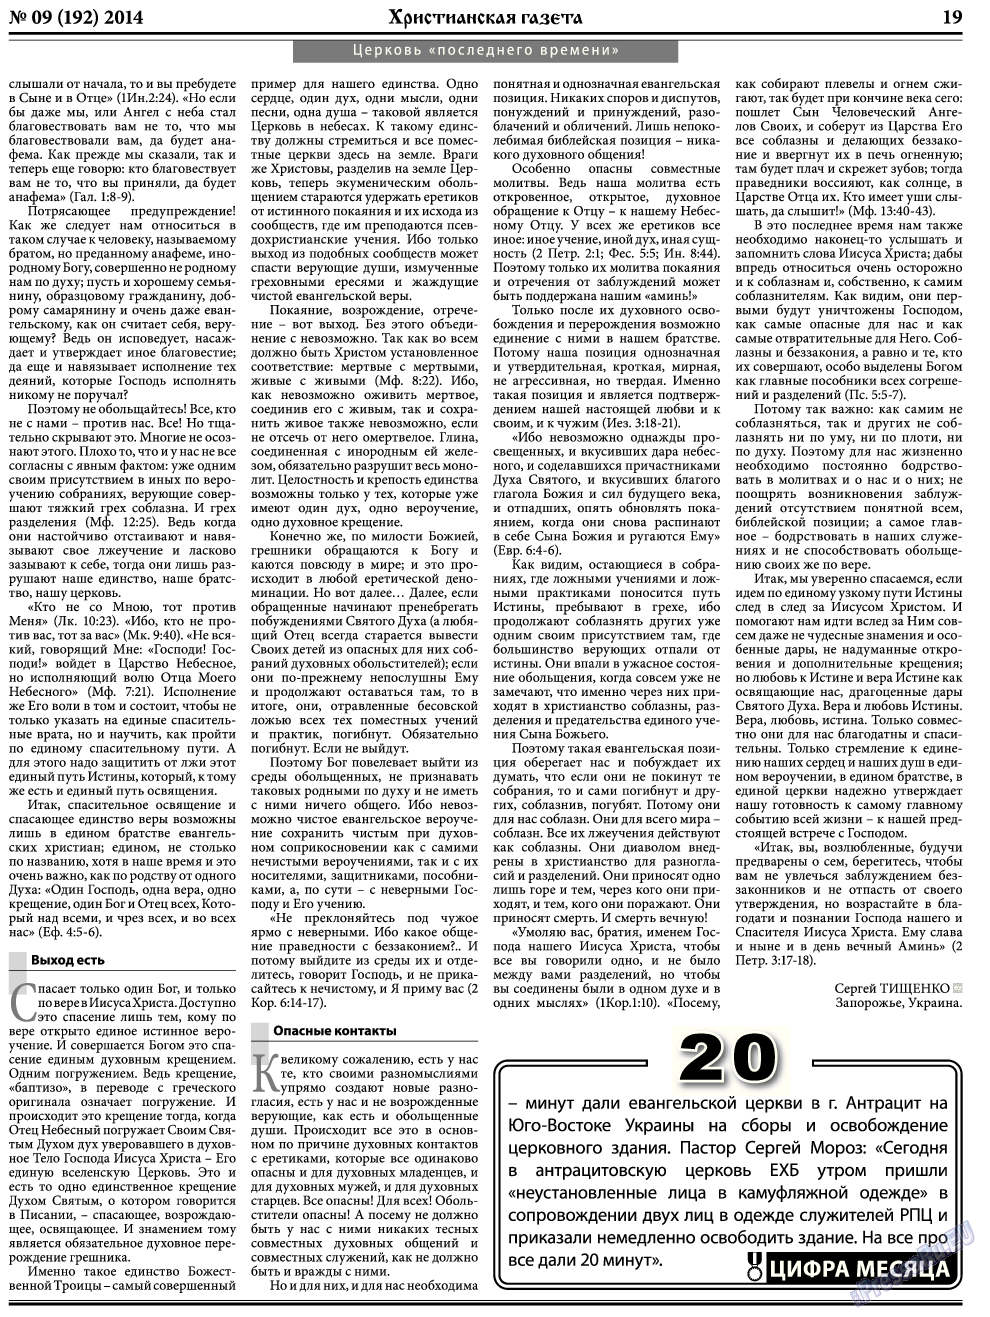 Христианская газета, газета. 2014 №9 стр.27